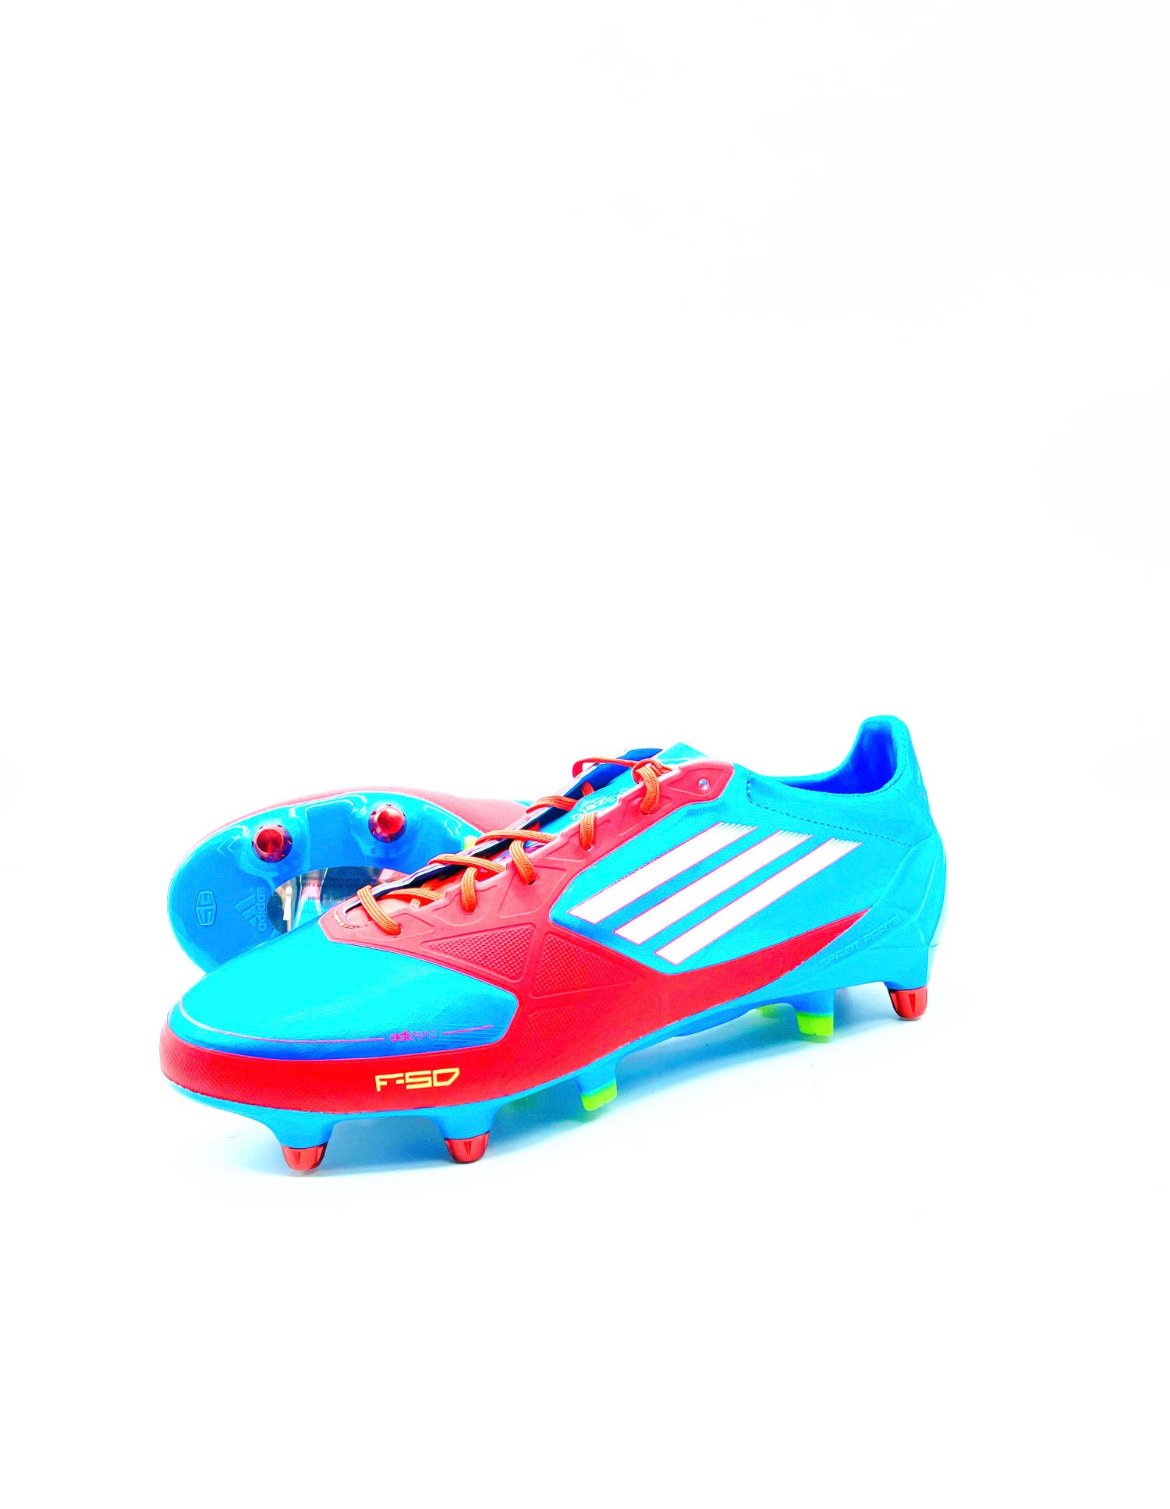 — Adidas adizero Blue red FG or SG